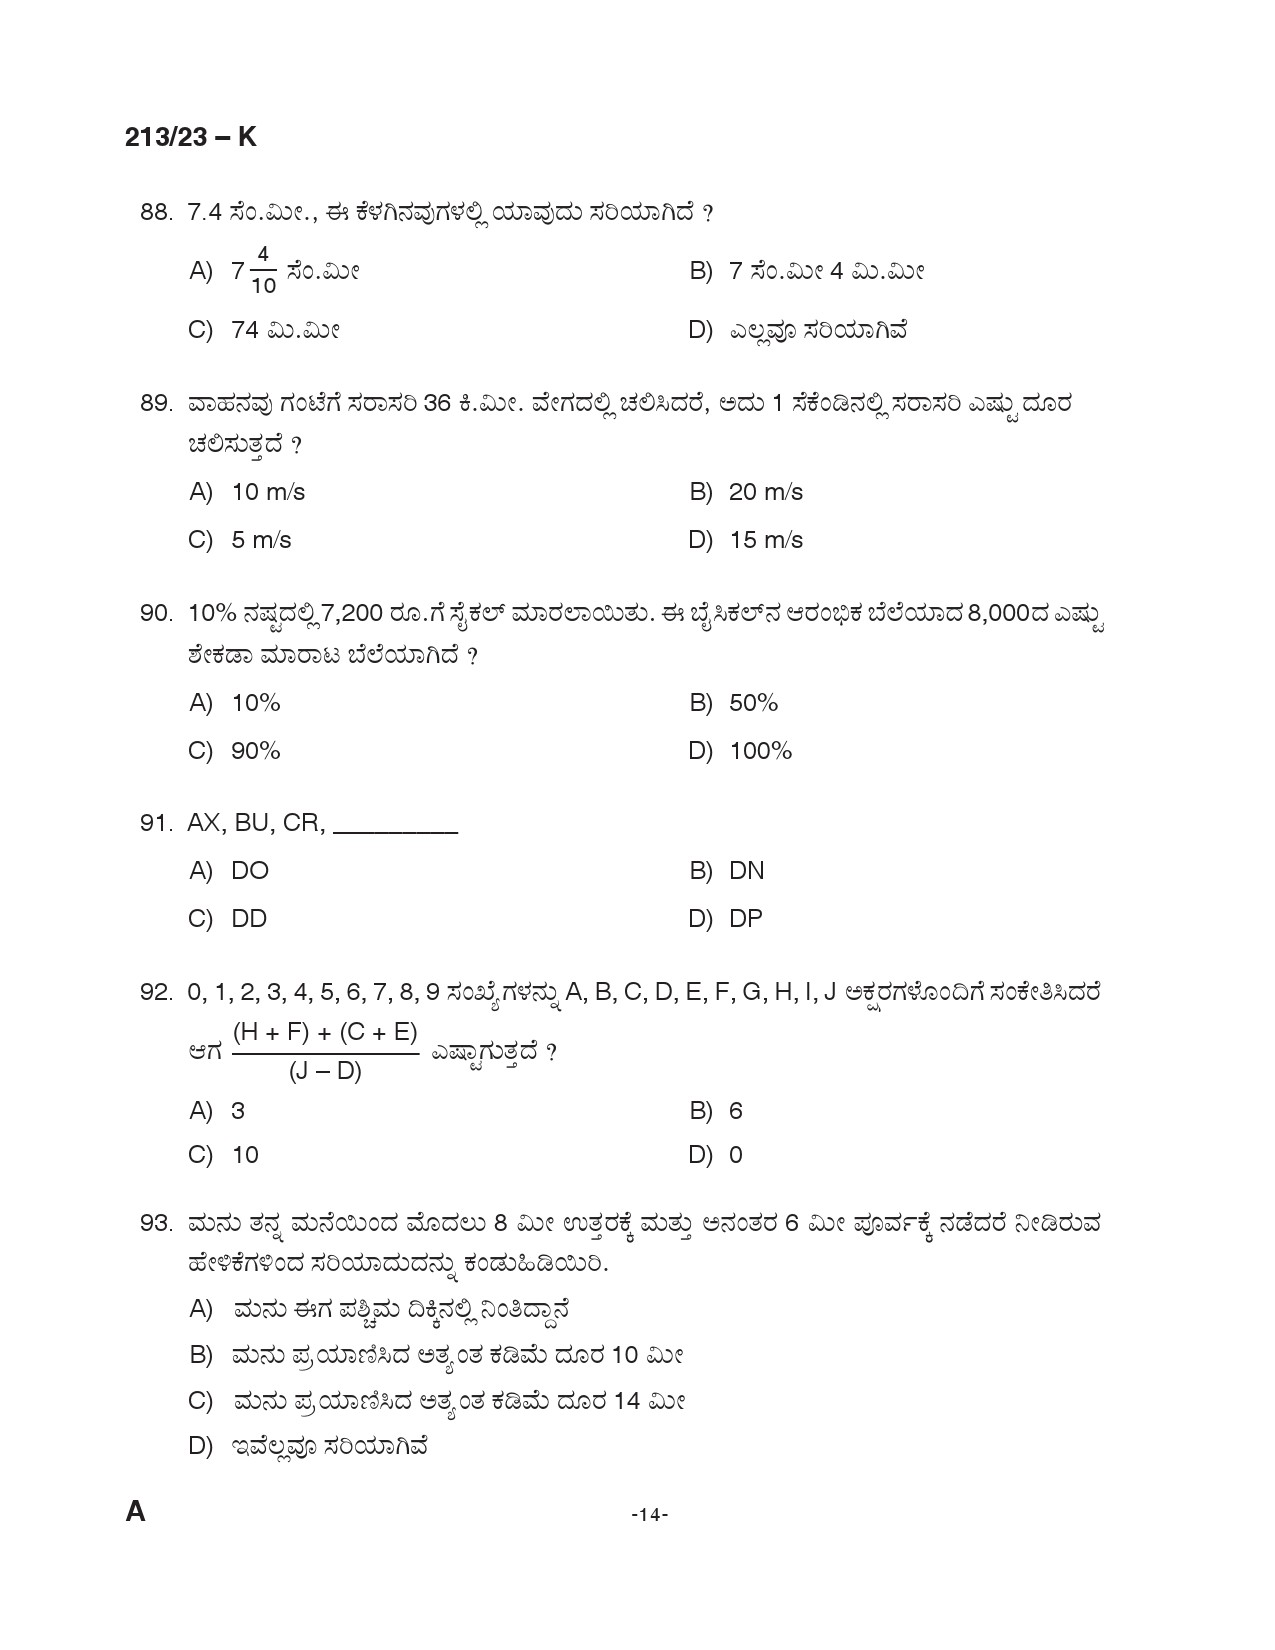 KPSC LGS Kannada Exam 2023 Code 2132023 K 13